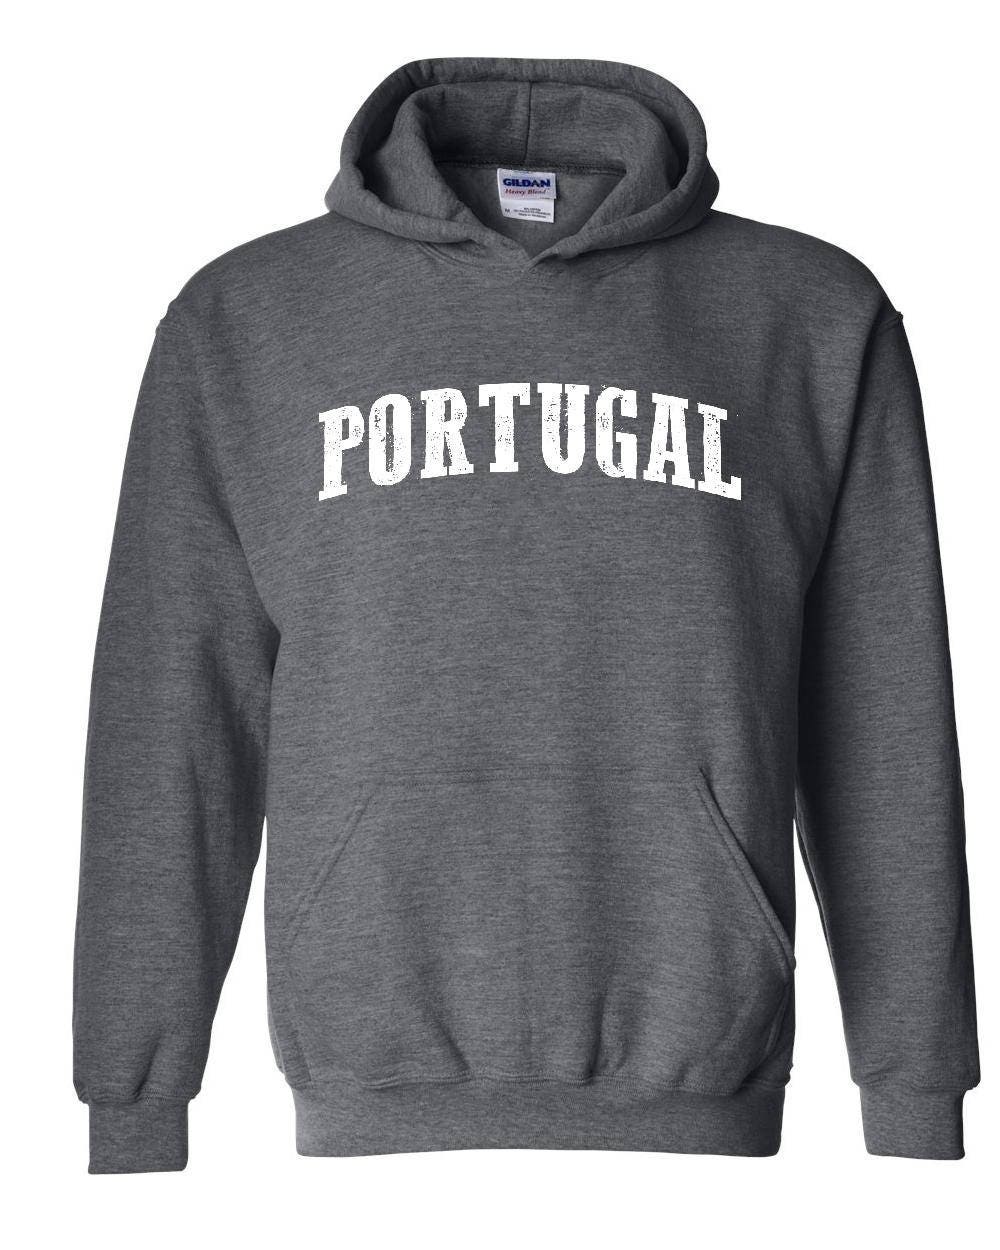 Portugal Hoodie Portugal Portuguese Unisex Hoodie Sweatshirt | Etsy